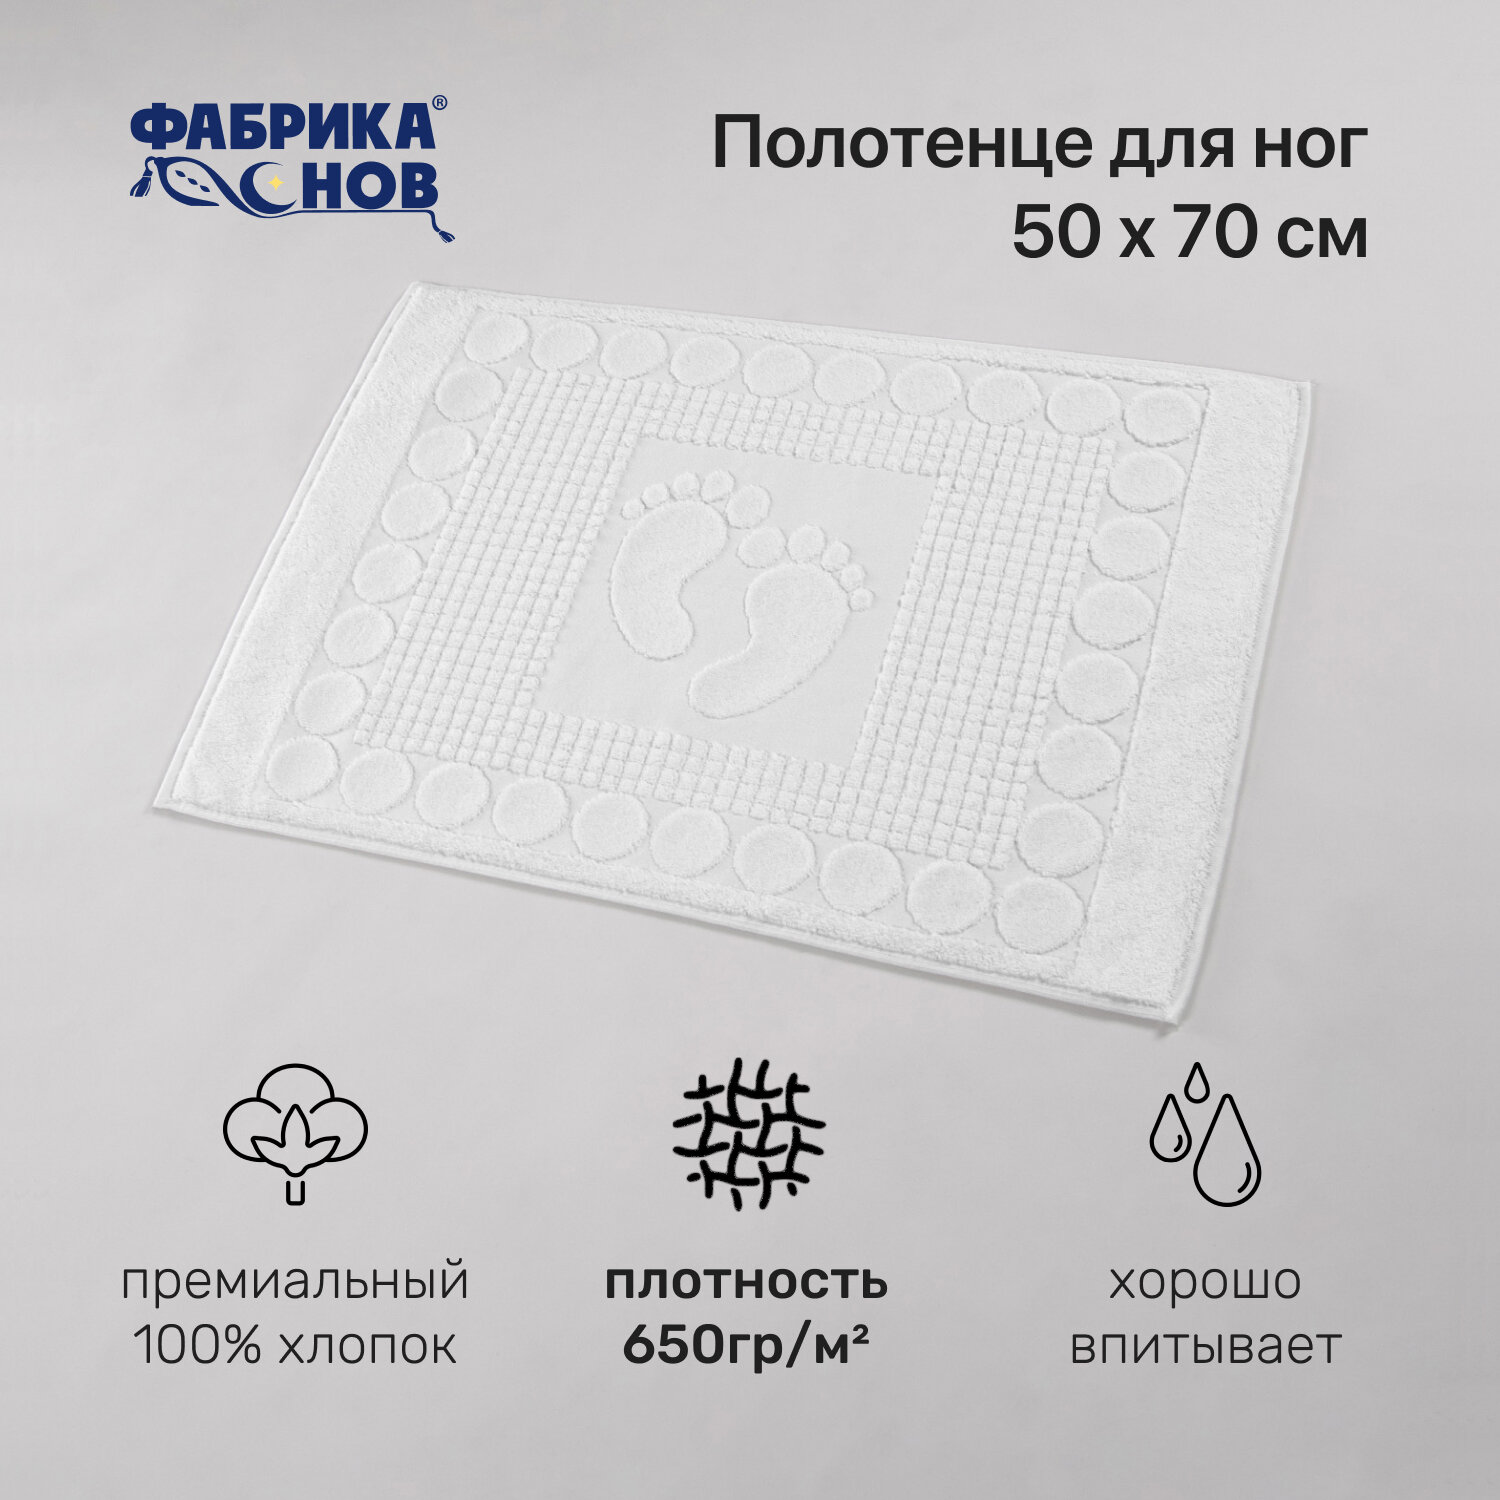 Полотенце-коврик для ног (50х70) 650гр/м2, белый - фотография № 1